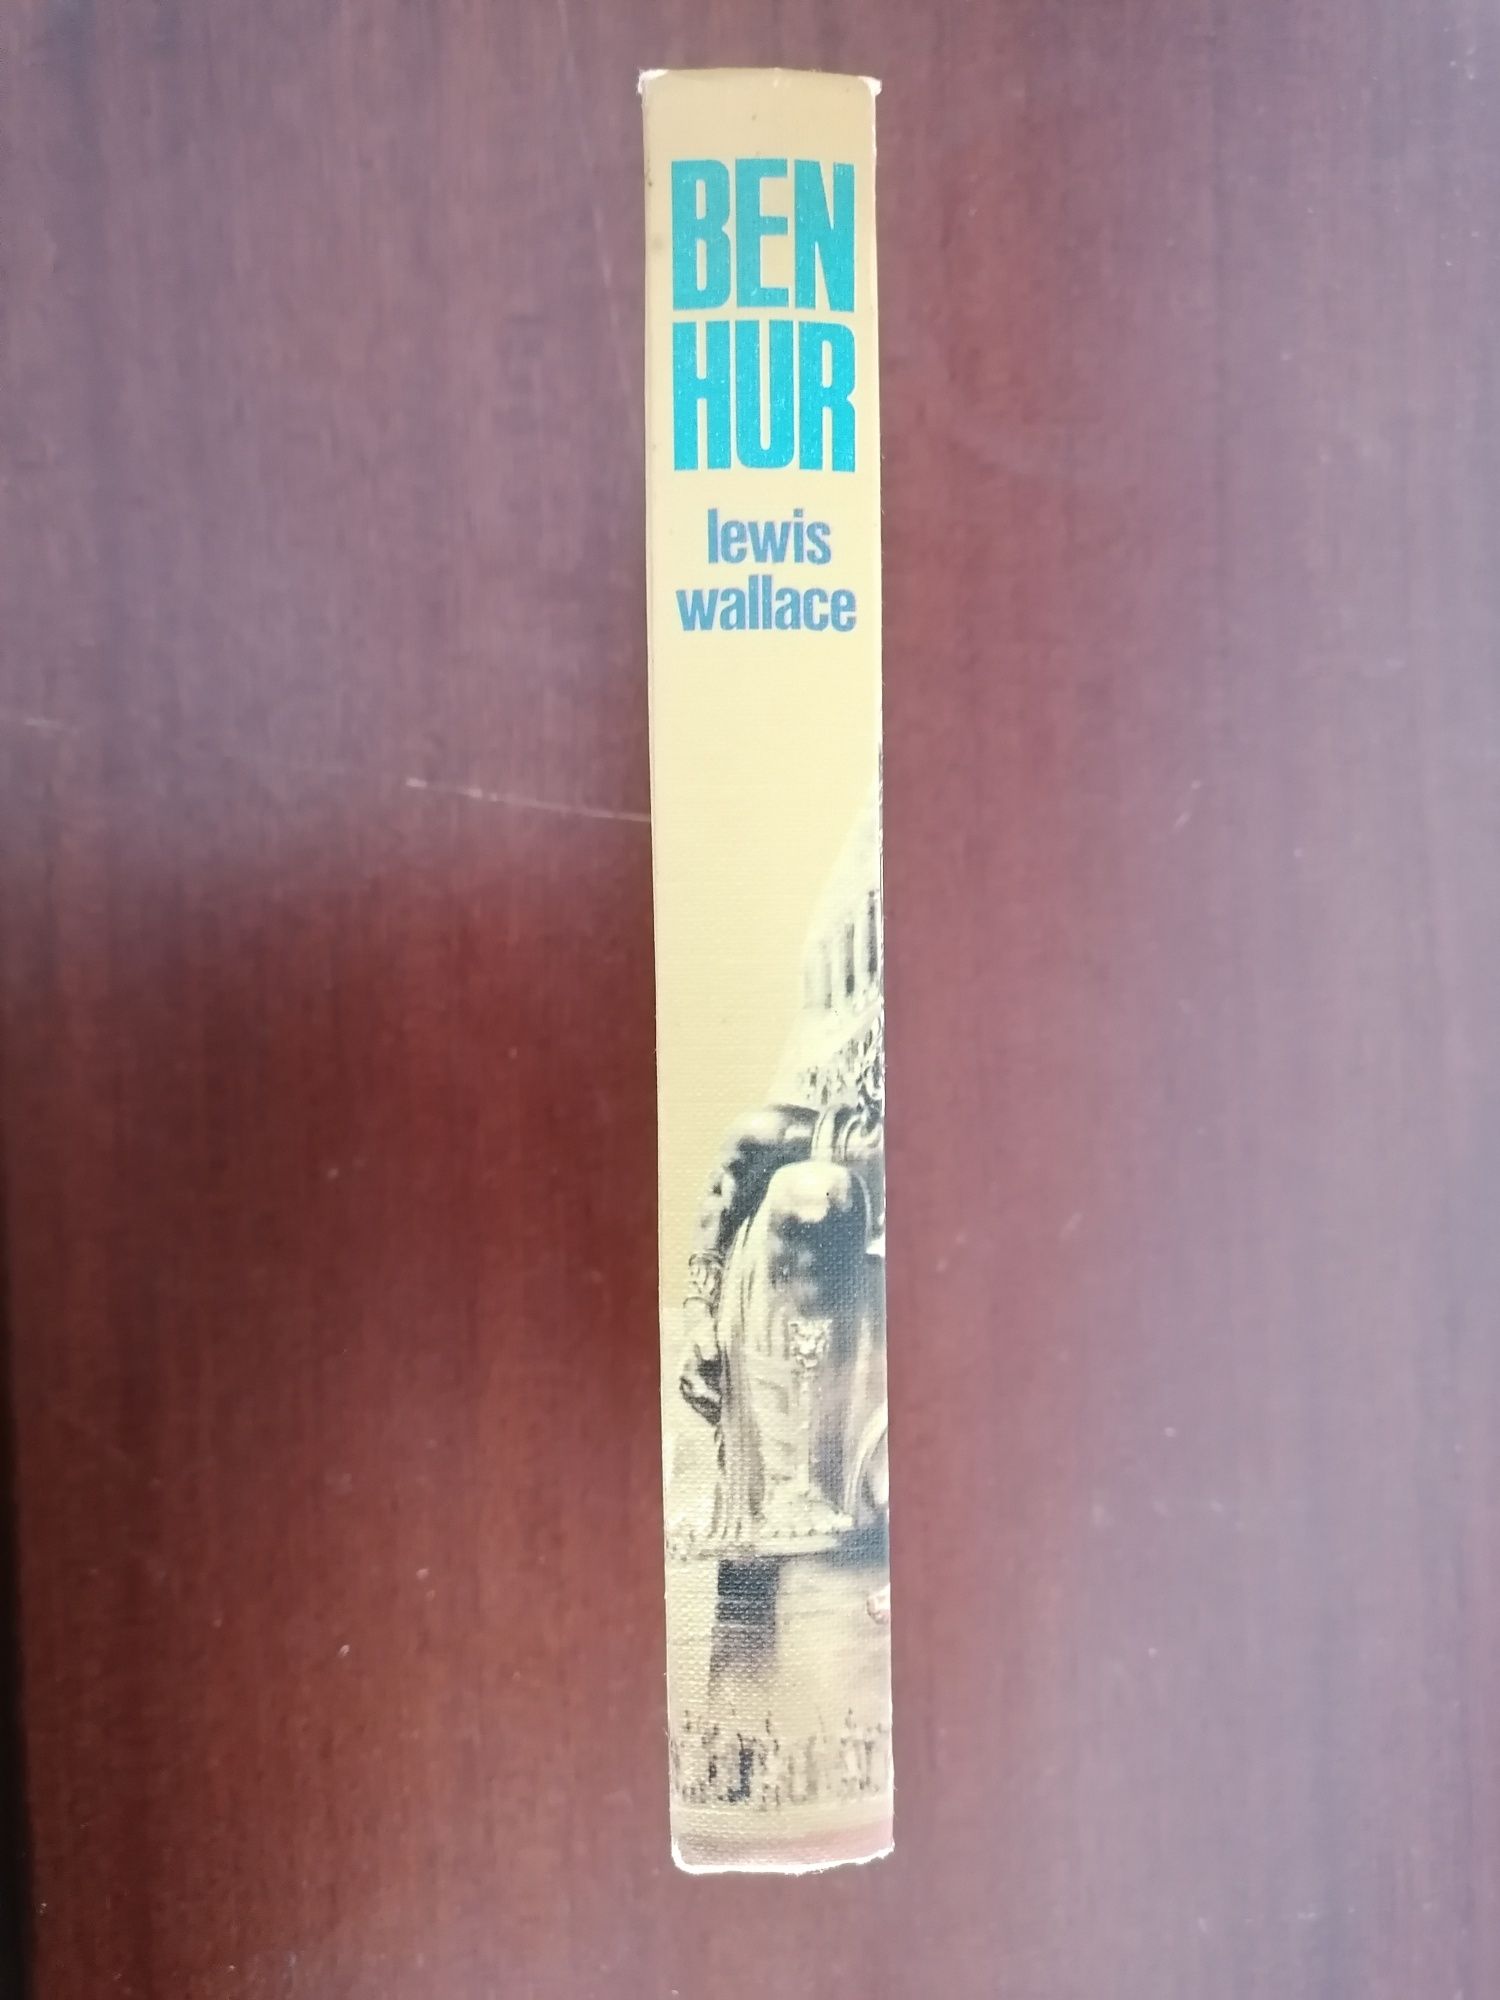 Livro "Ben Hur" de Lewis Wallace